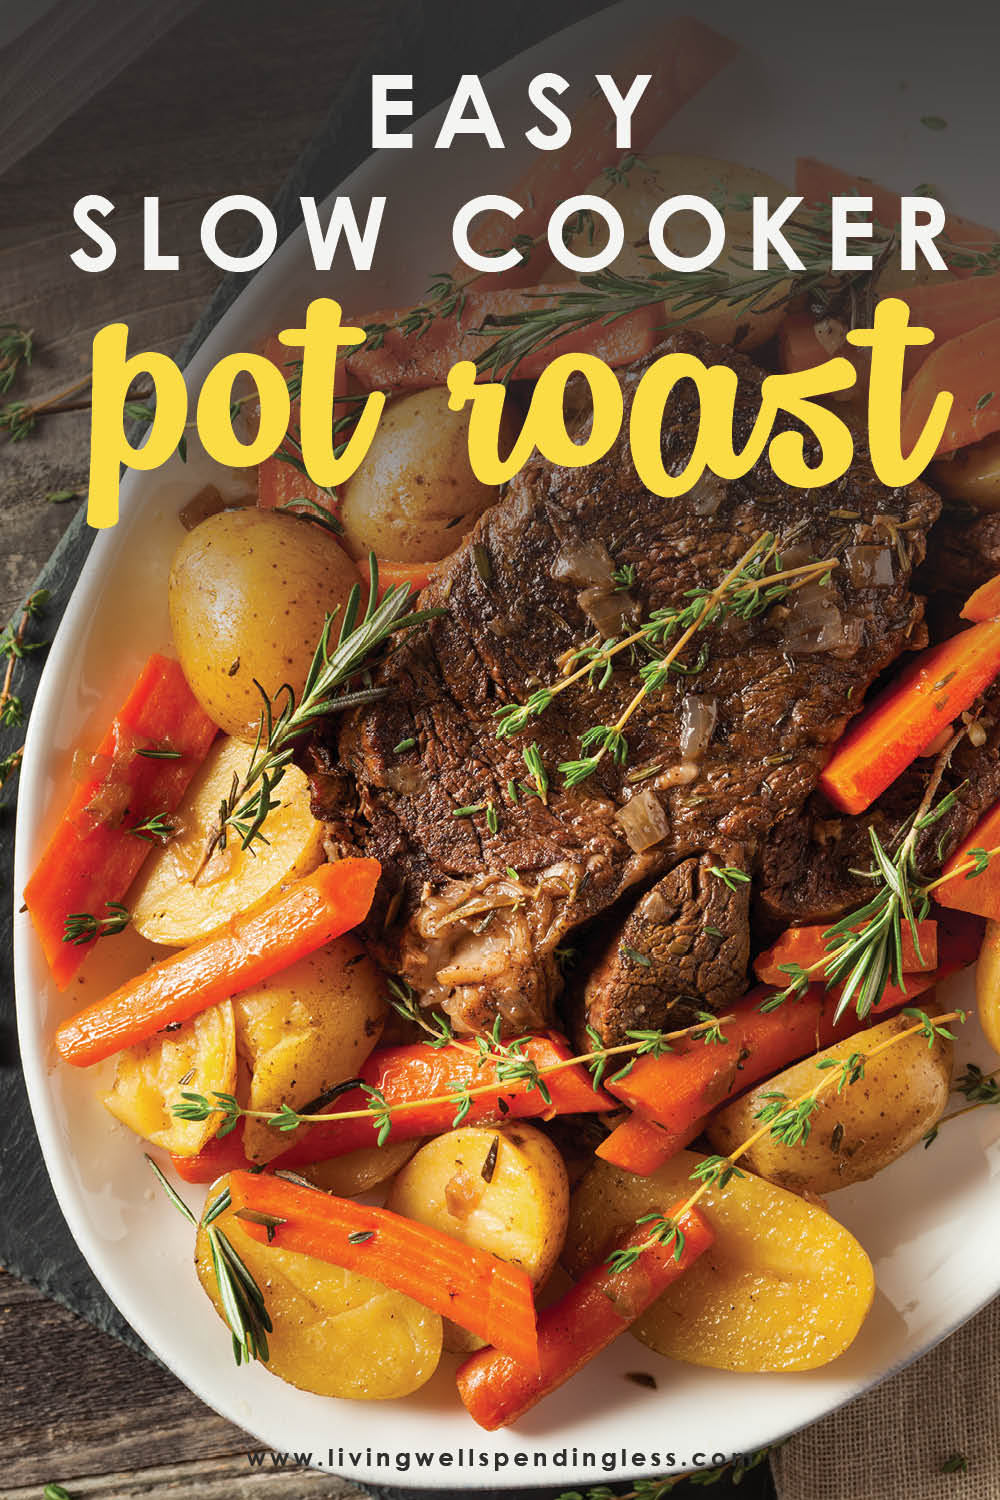 Easy Slow Cooker Pot Roast Recipe | Living Well Spending Less®